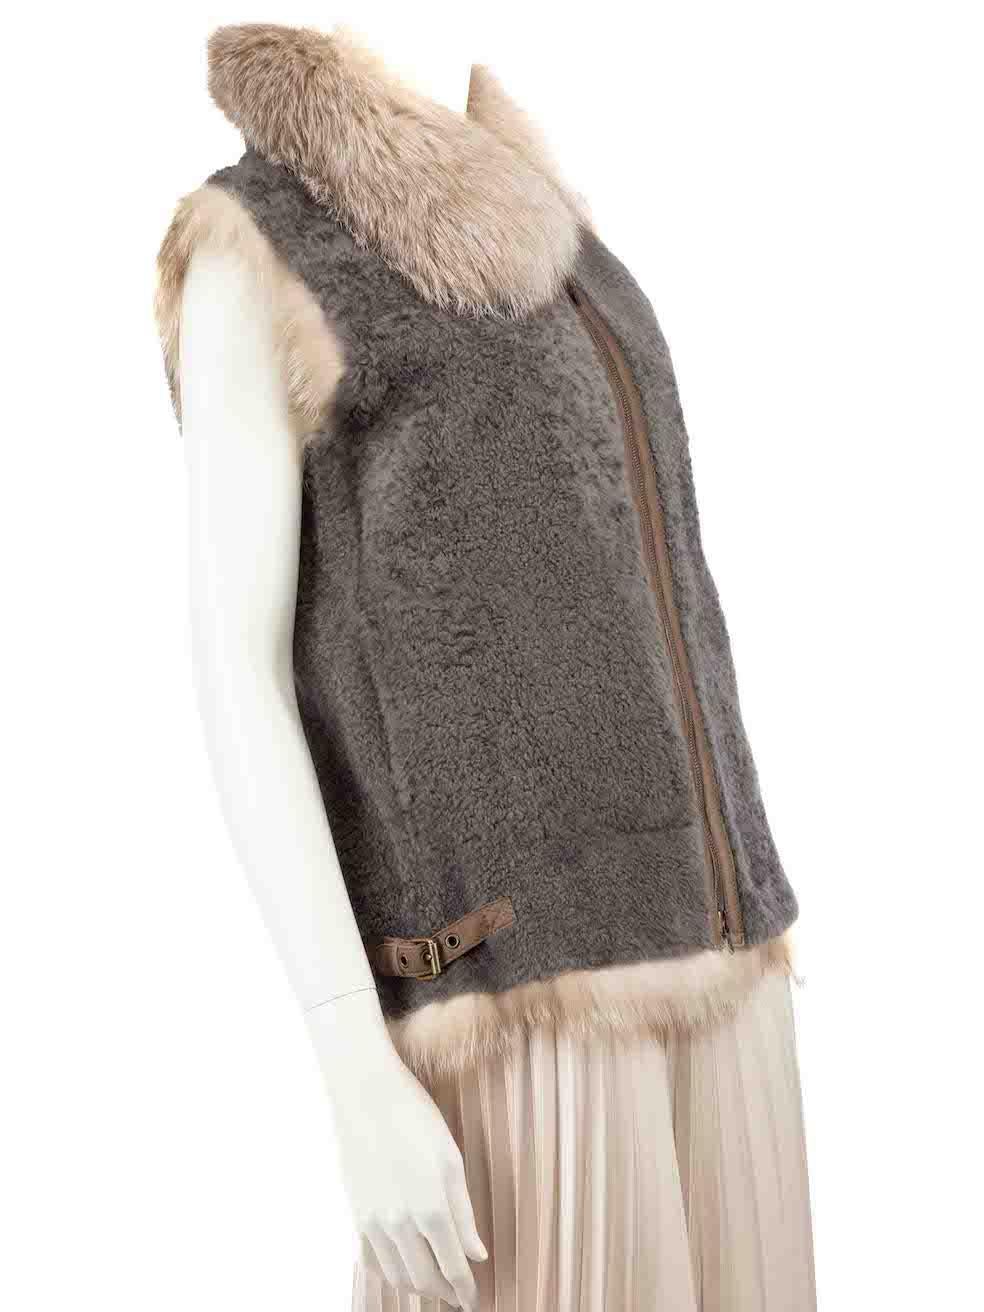 CONDIT ist sehr gut. Kaum sichtbare Abnutzungserscheinungen an der Jacke sind bei diesem gebrauchten Brunello Cucinelli Designer-Wiederverkaufsartikel zu erkennen.
 
 
 
 Einzelheiten
 
 
 Grau
 
 Schafsfell
 
 Gilet
 
 Pelzbesatz
 
 Futter aus